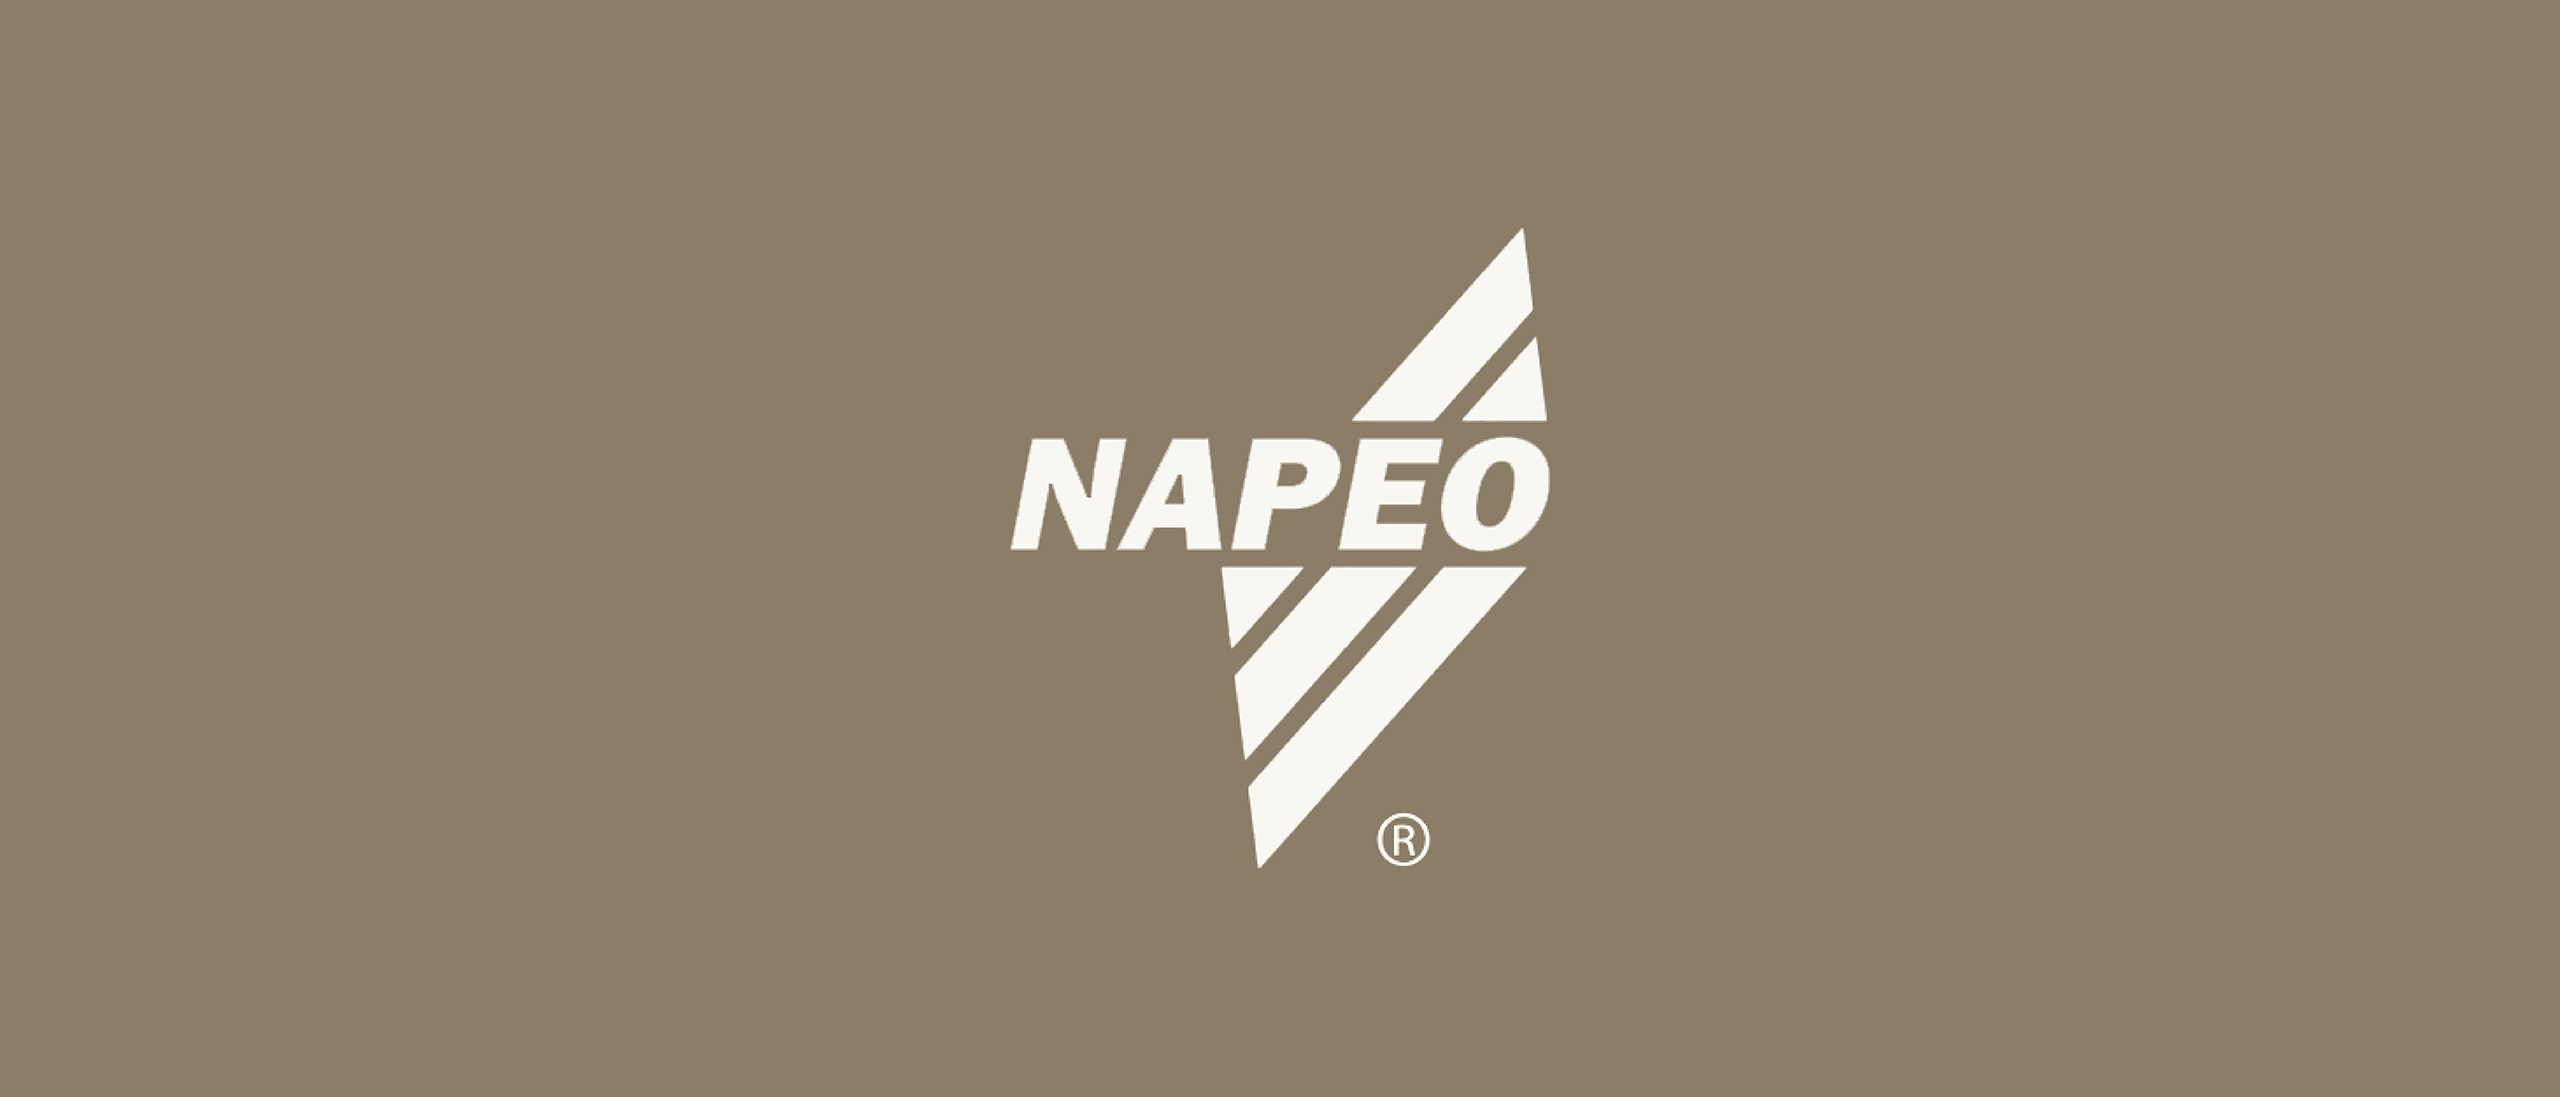 NAPEO logo